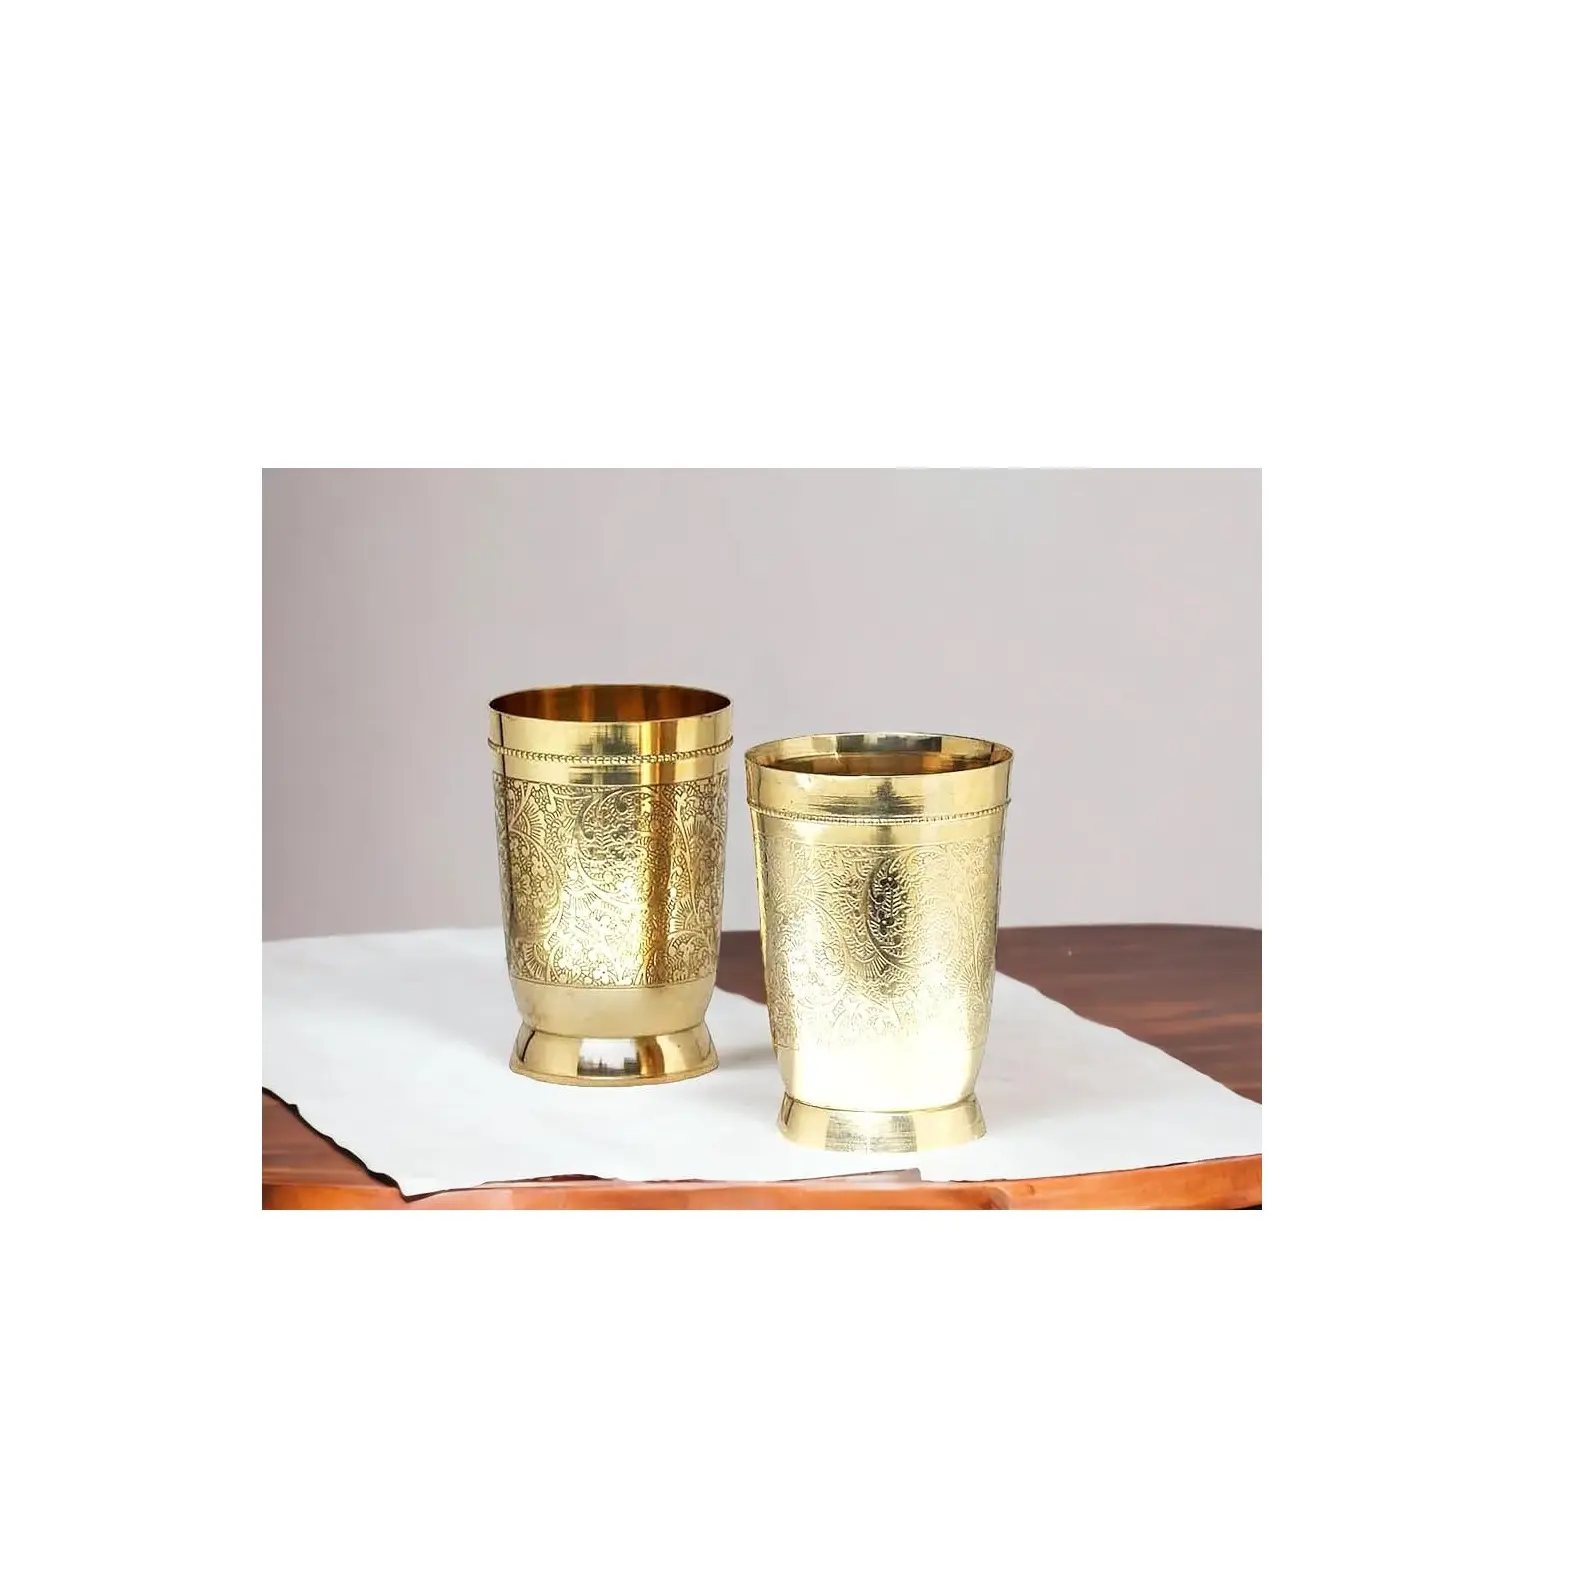 Top-Design 100 % handgefertigtes Metallglas für Saftbecher Glas Großhandelspreis Barwaren Bier Getränke Ware Glas für Party-Bekleidung